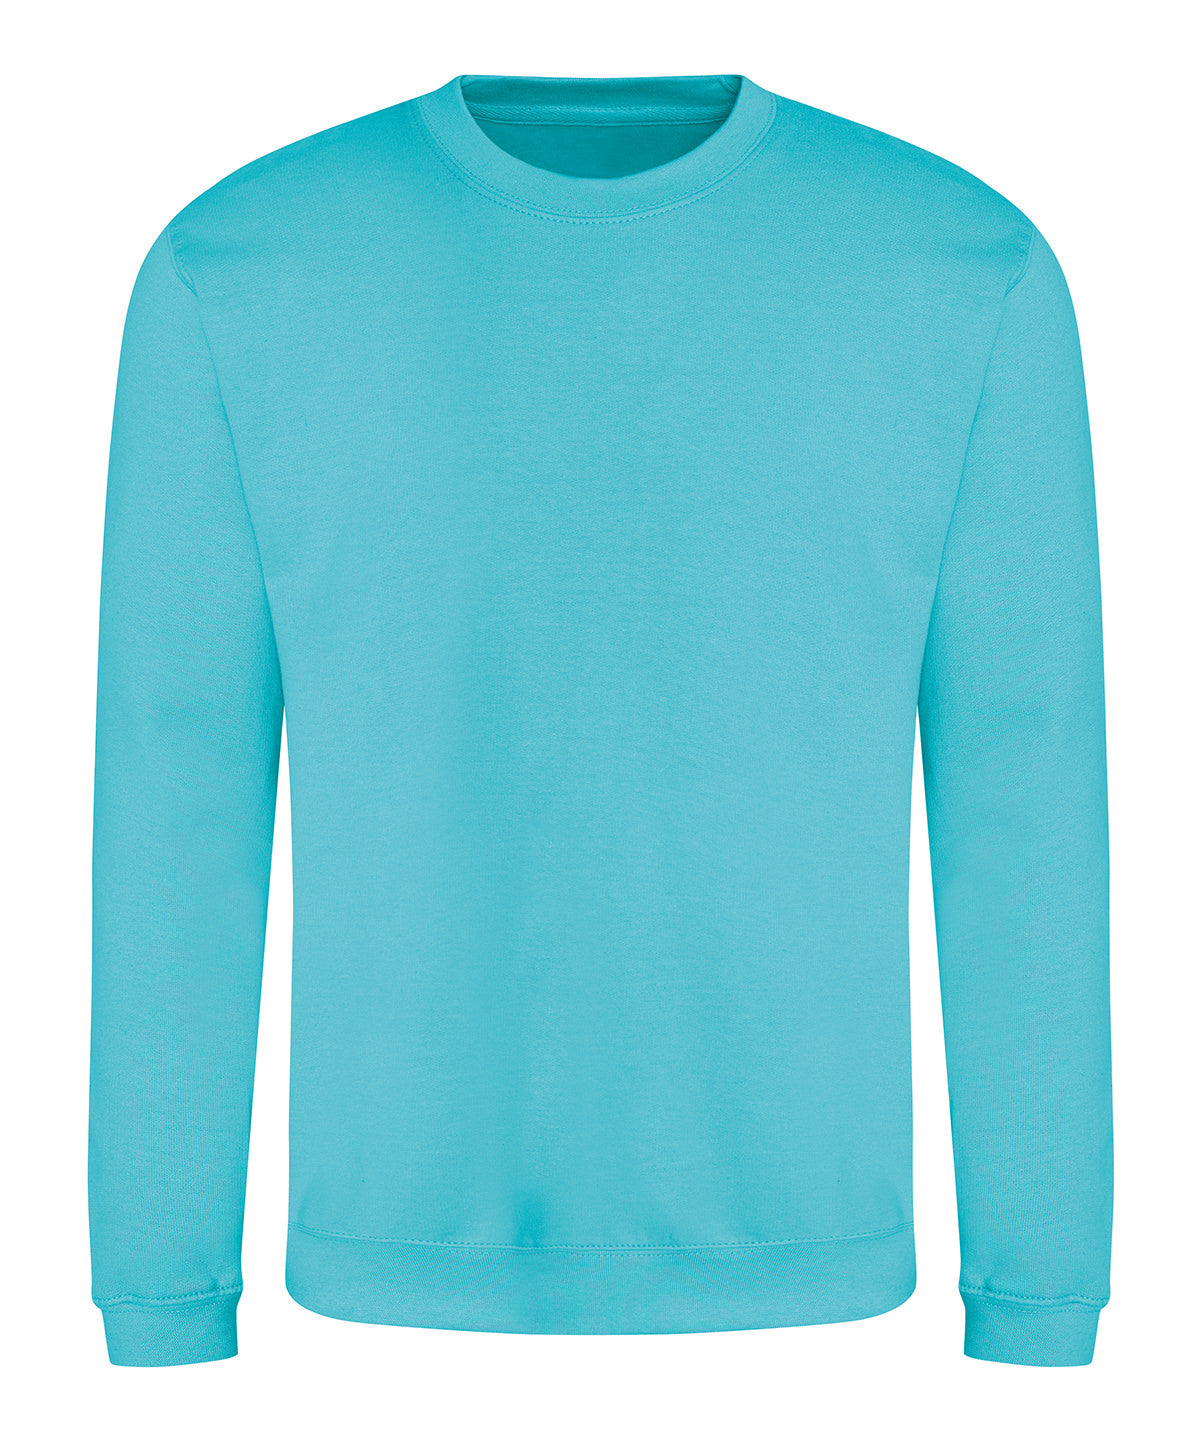 AWDis Sweatshirt Turquoise Surf